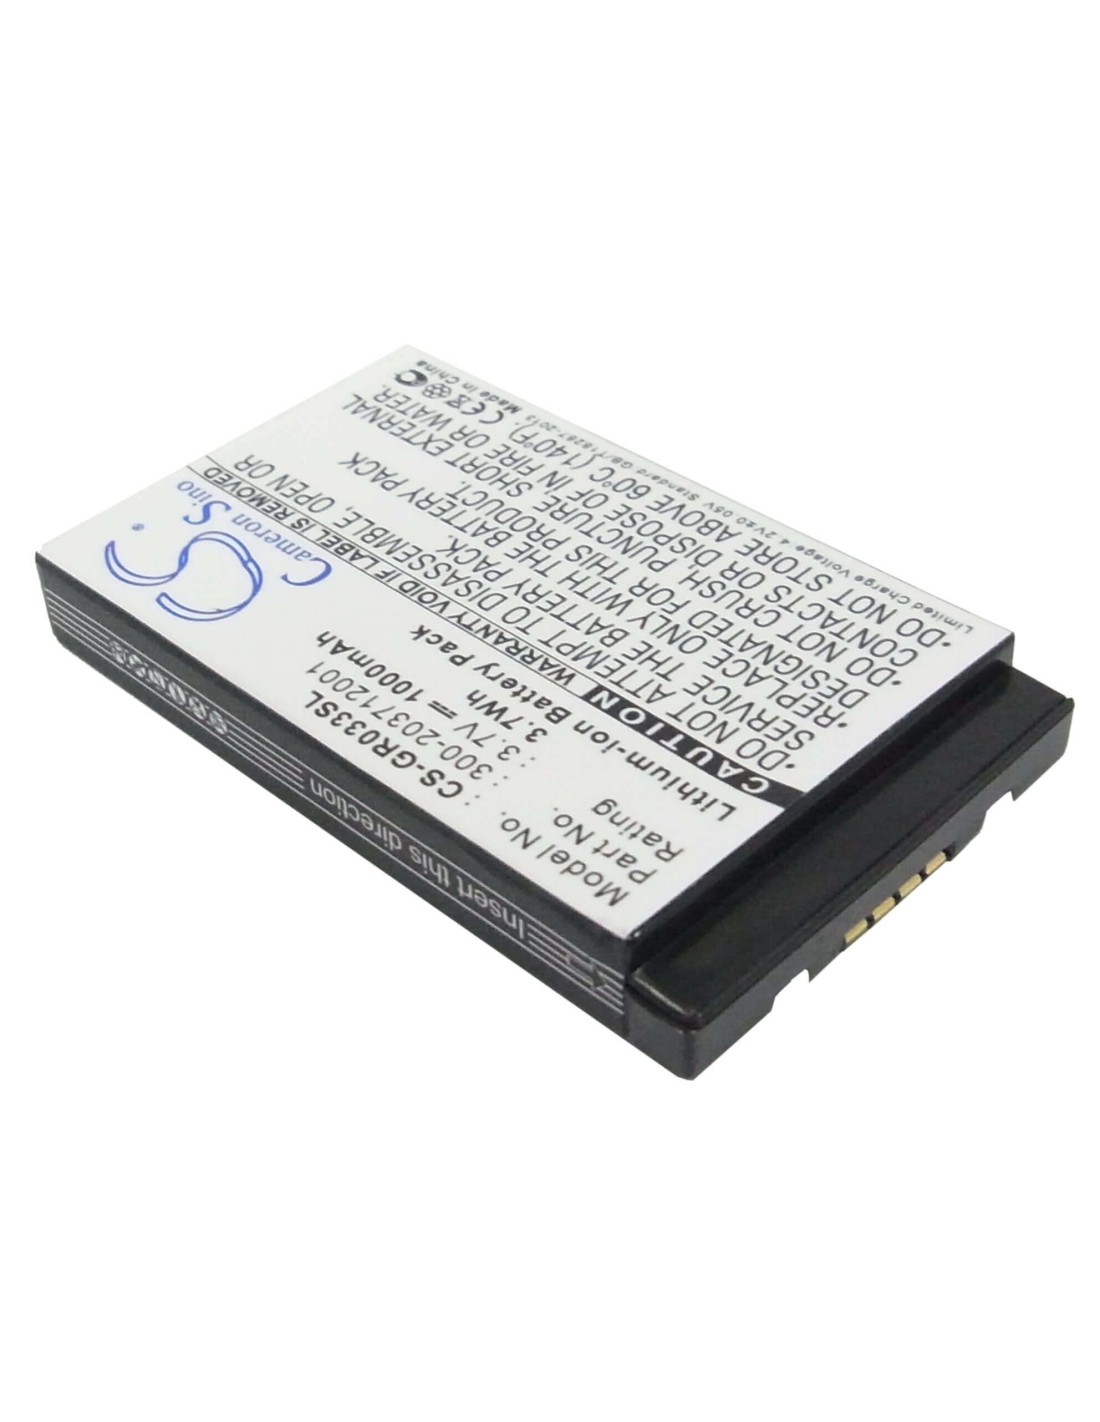 Battery for Rikaline 6030, Gps-6033, 3.7V, 1000mAh - 3.70Wh